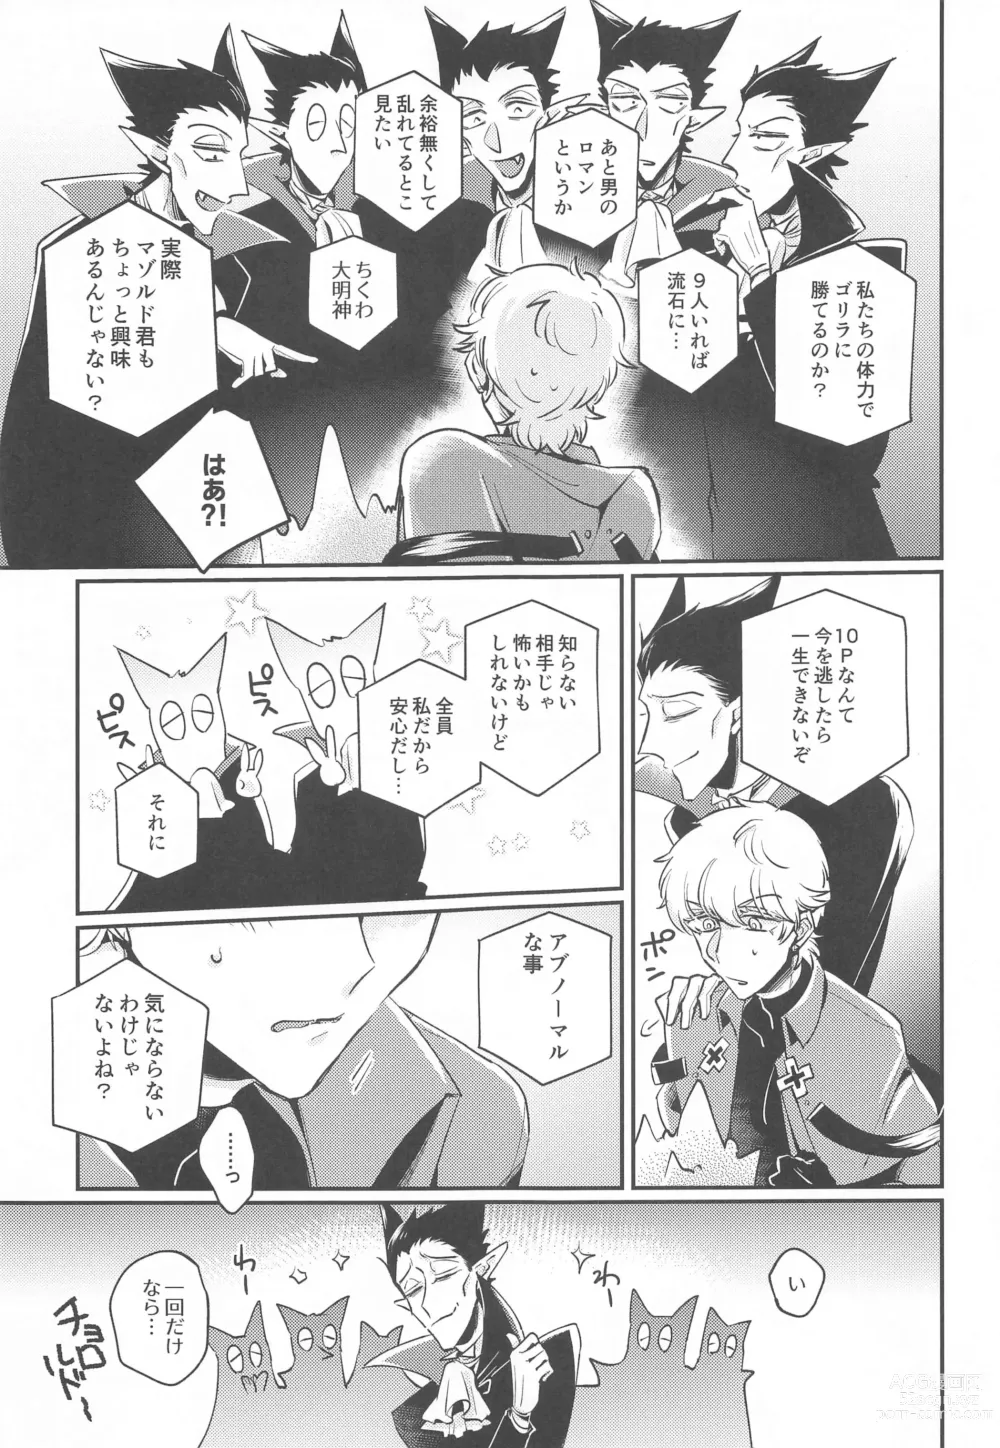 Page 6 of doujinshi 10P Shiyo Ldo-kun!